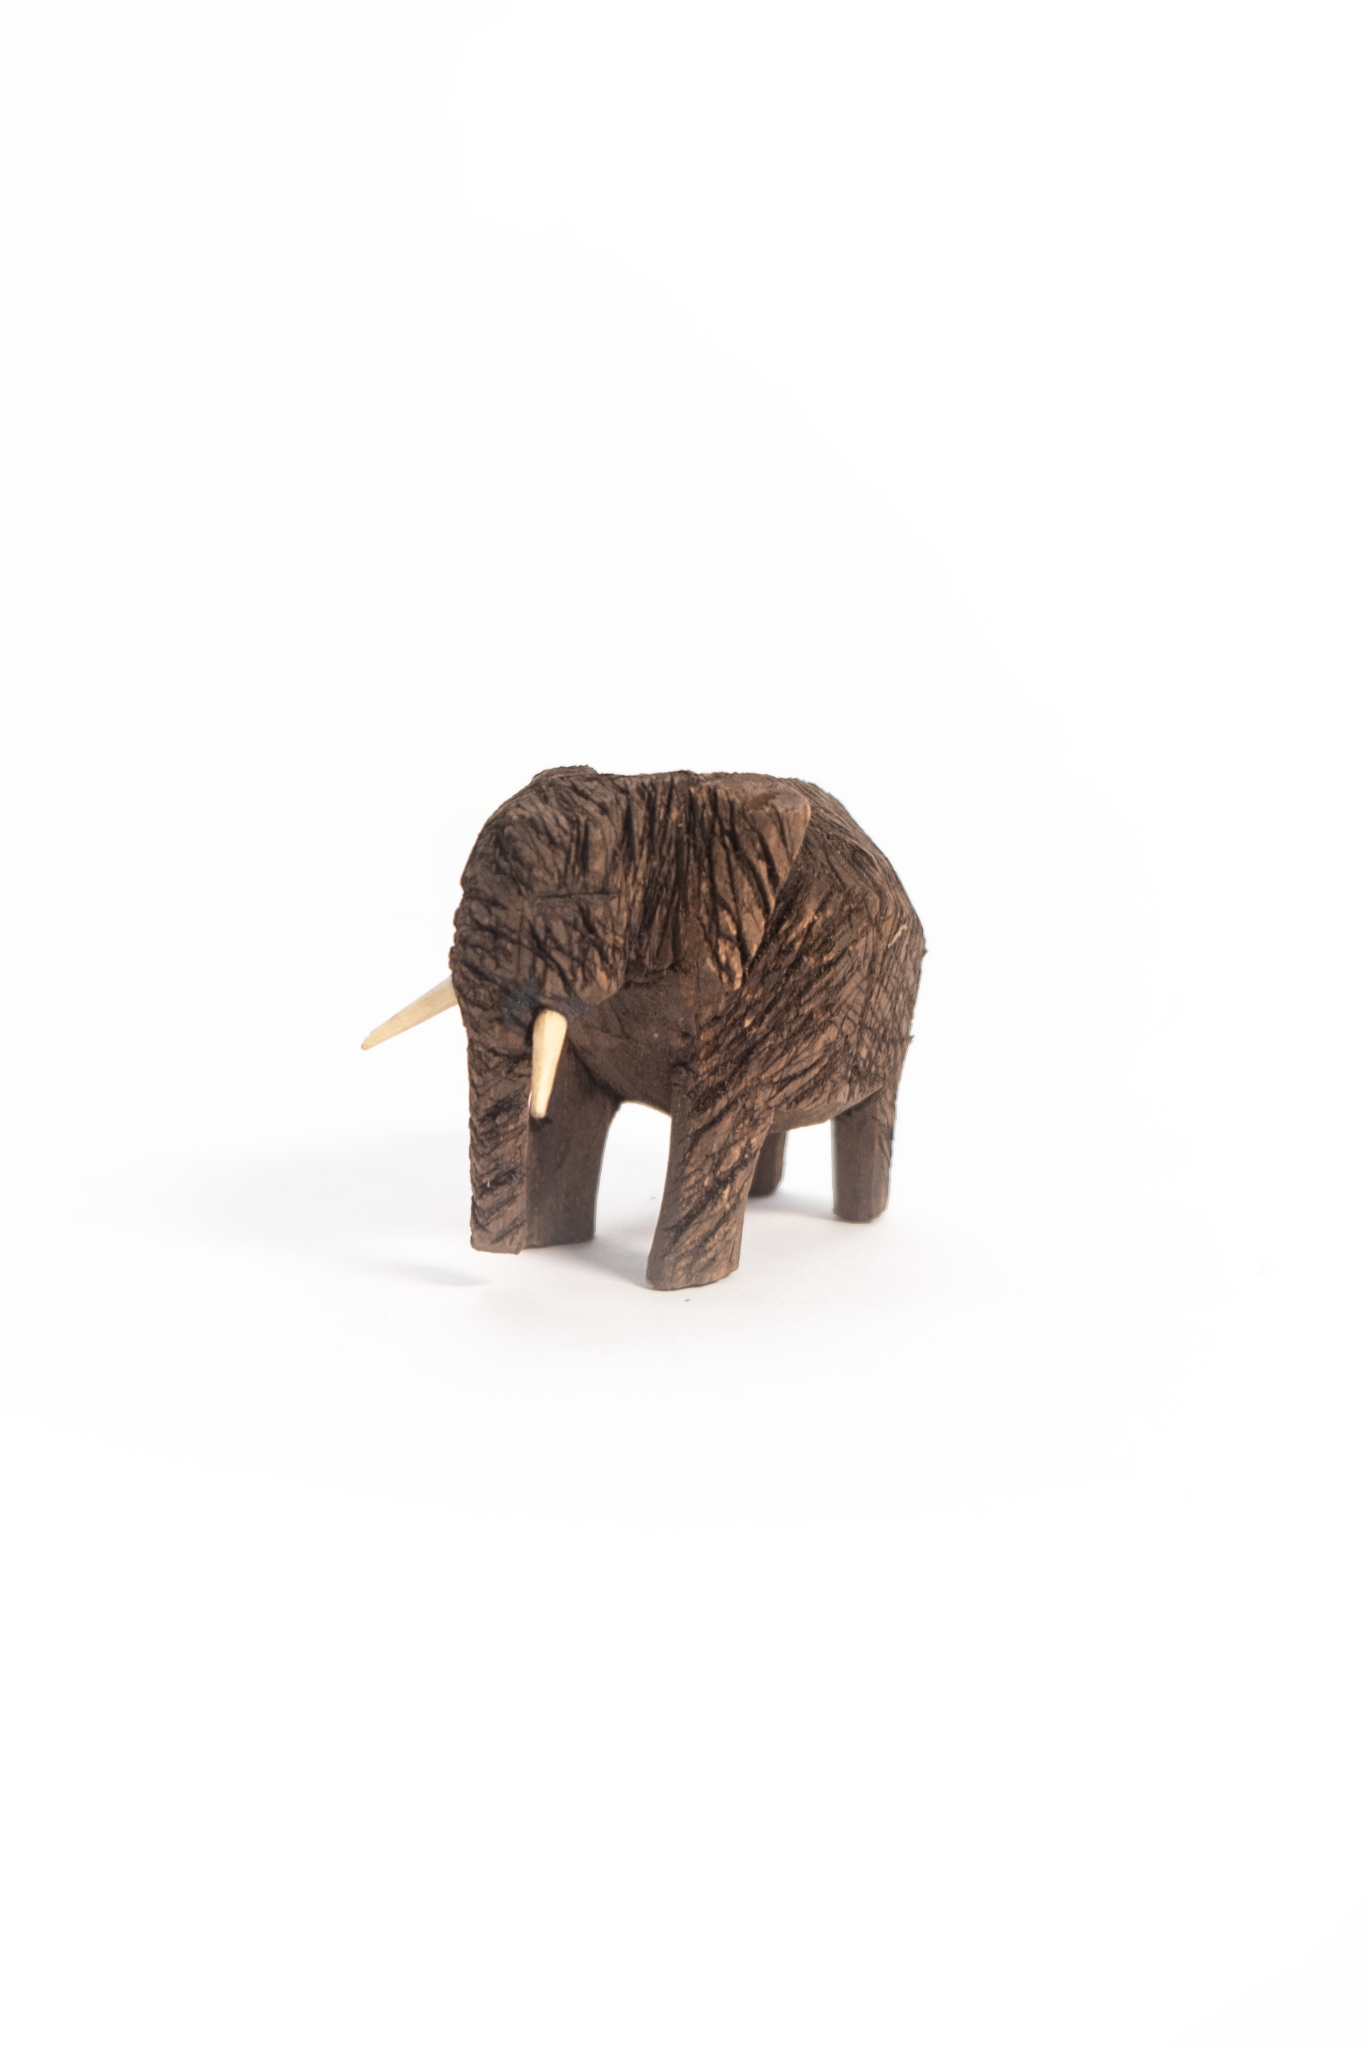 Tiny Wooden Elephant